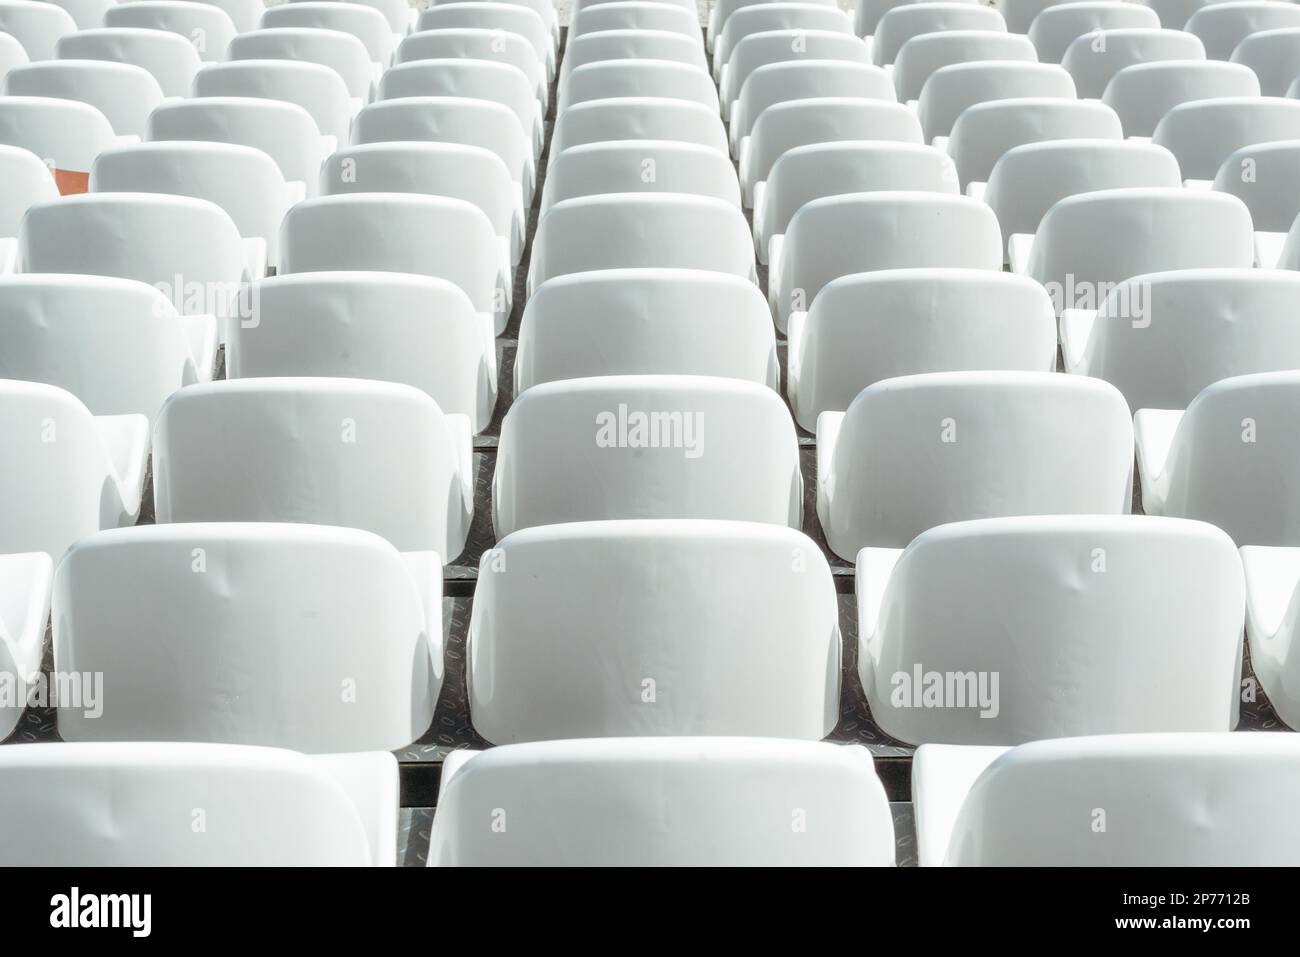 Tribune sports stadium with empty chairs Stock Photo - Alamy